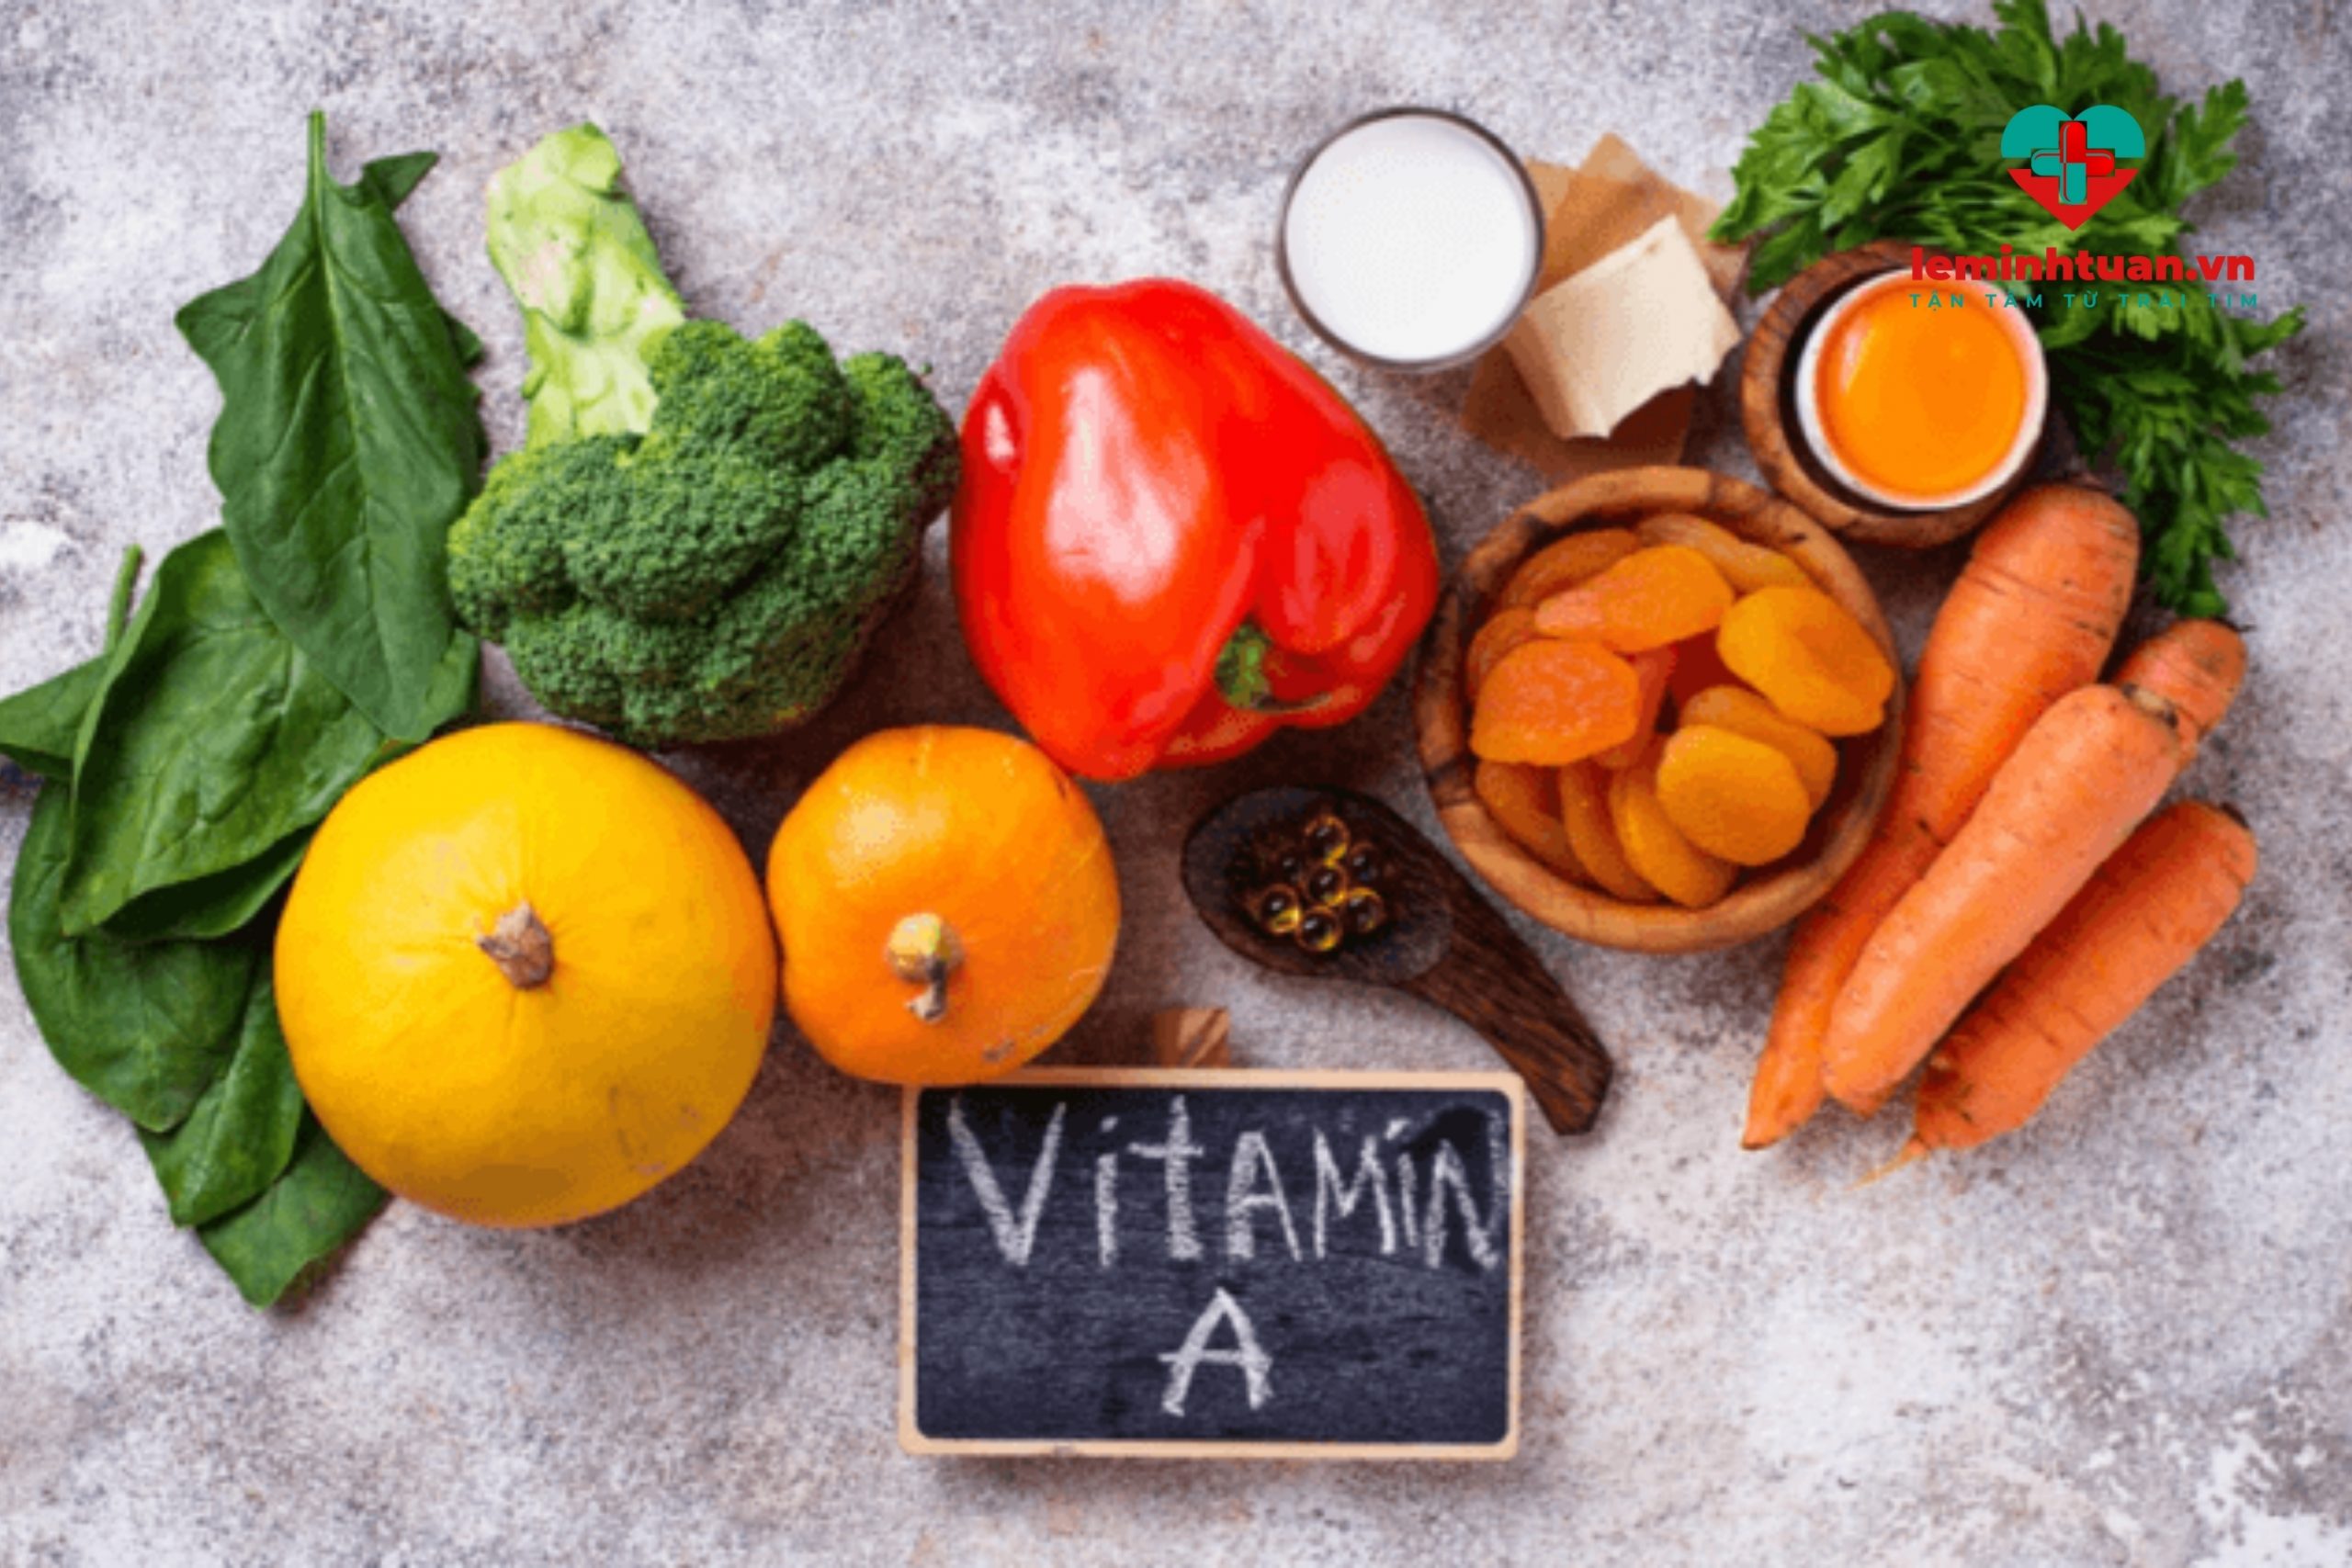  Bé biếng ăn nên bổ sung vitamin A